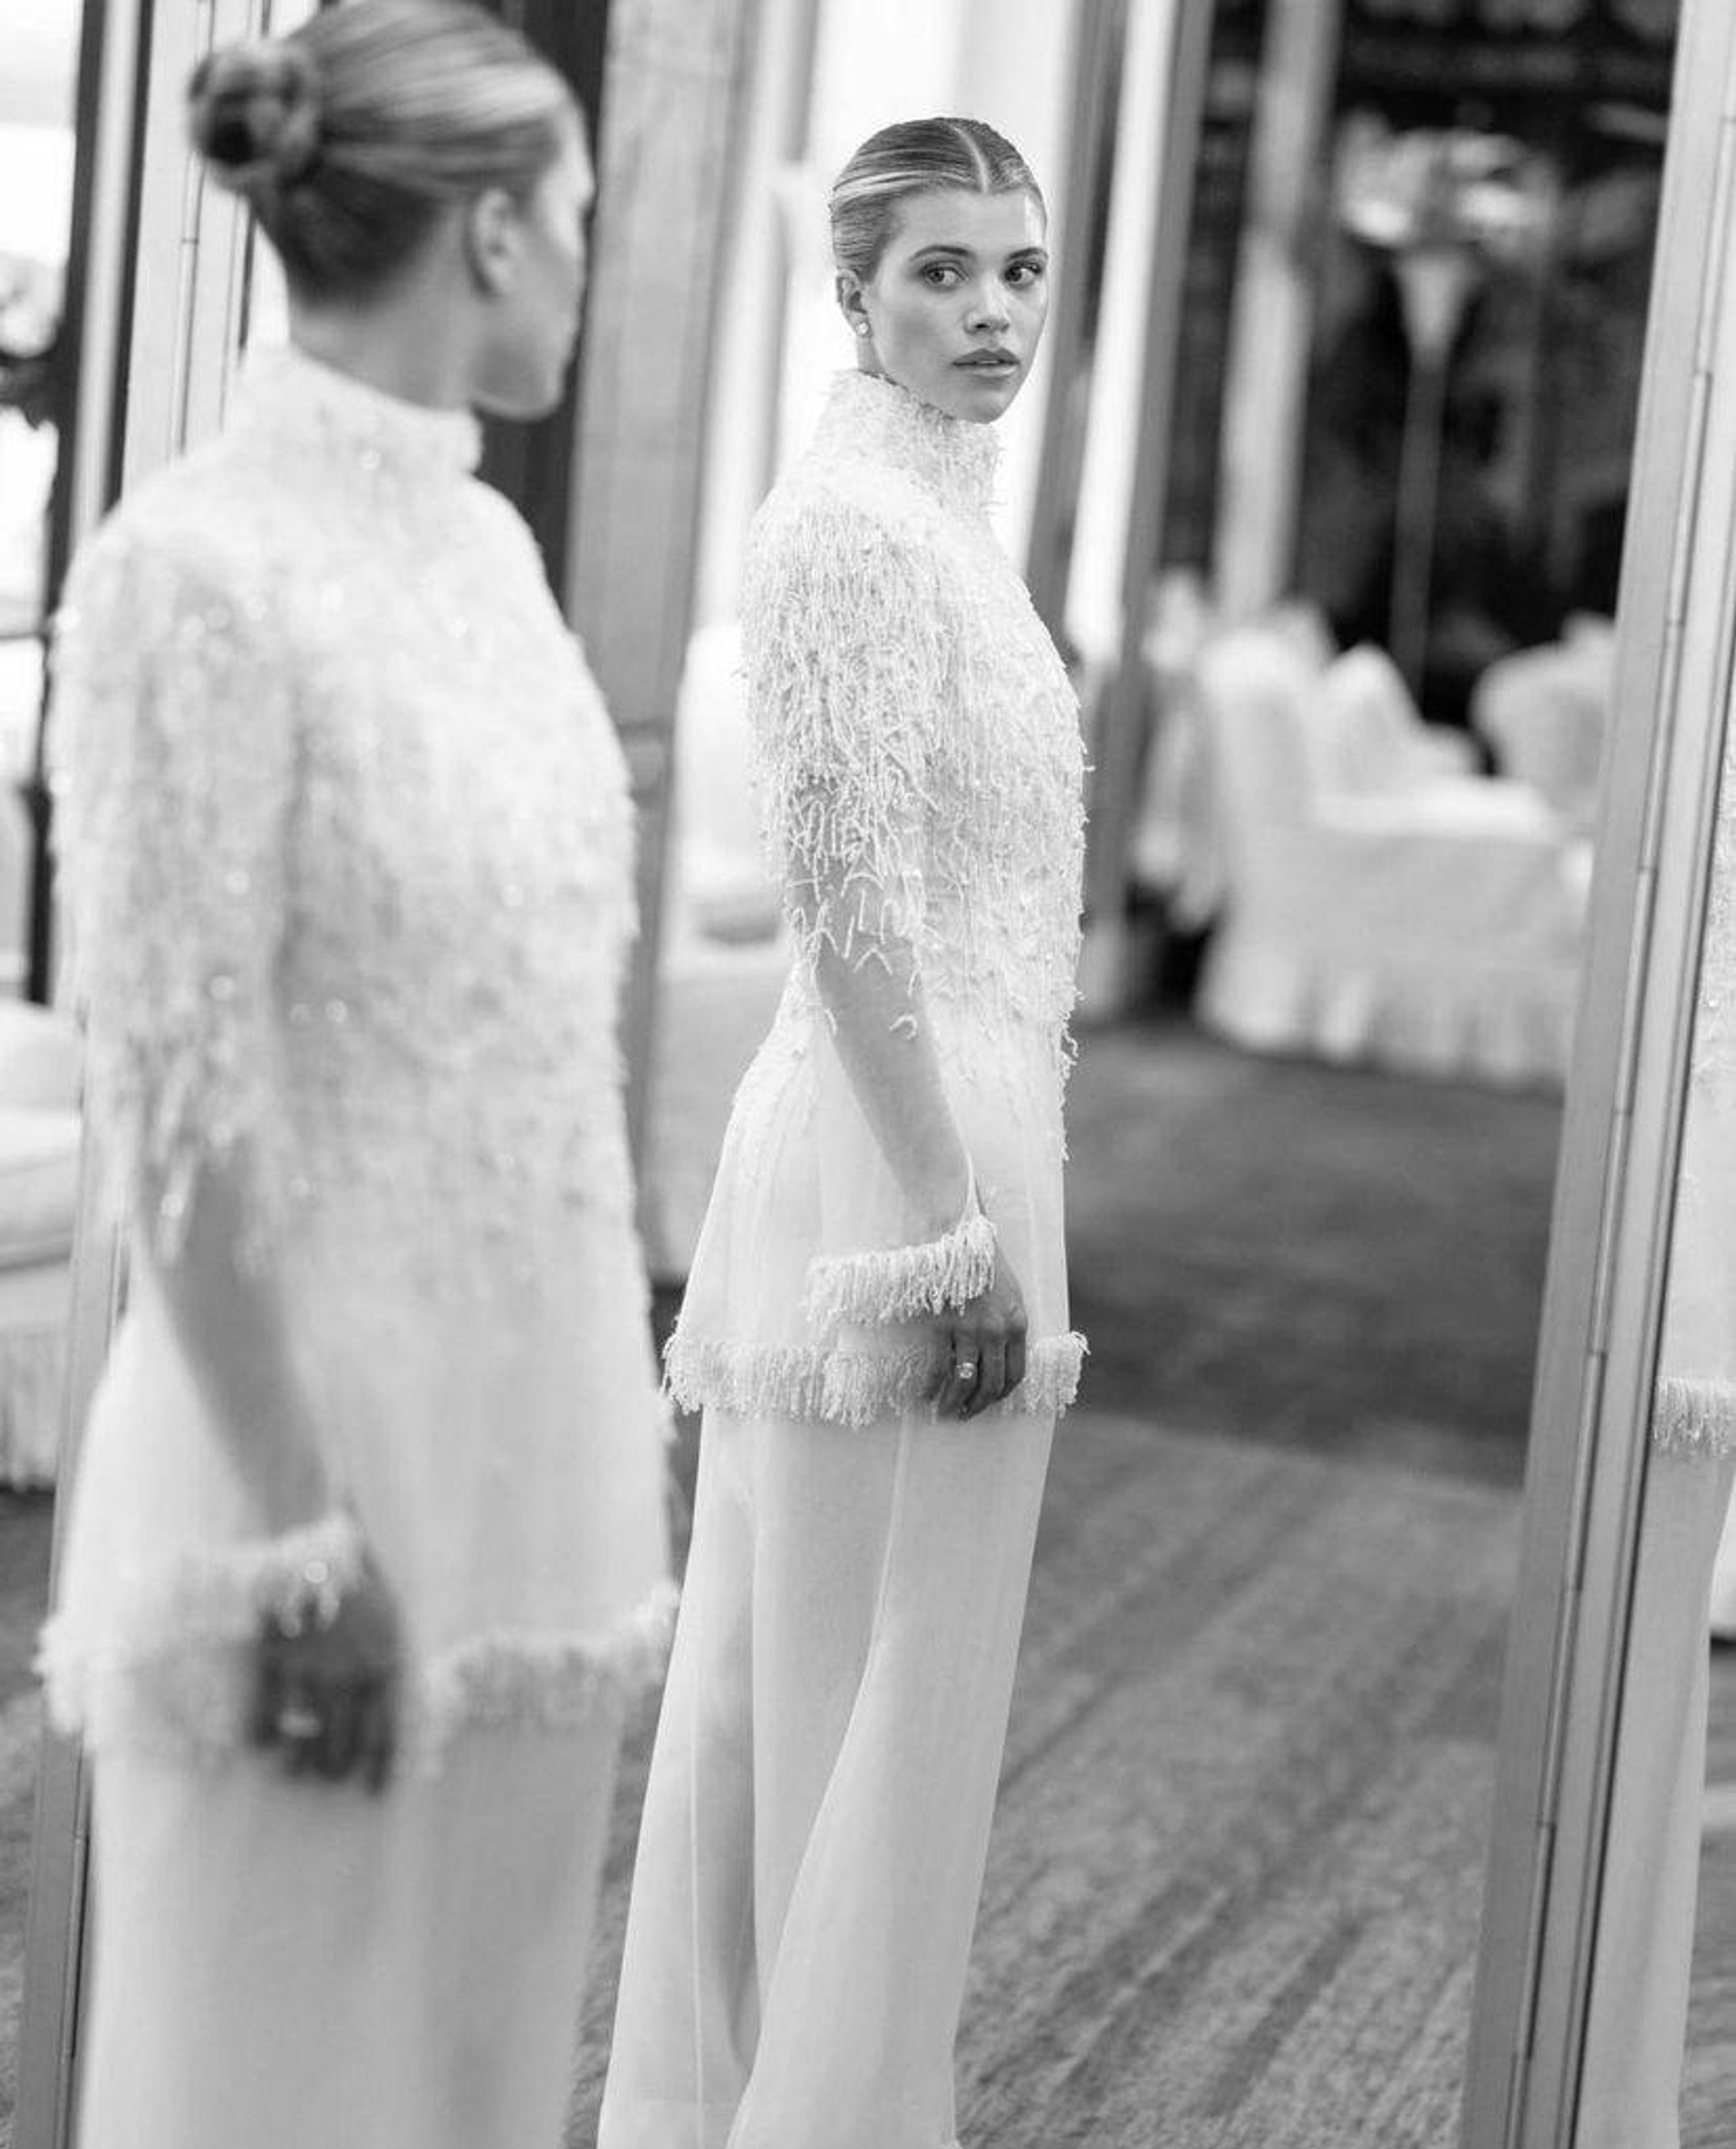 Третье платье невесты
Фото: Vogue